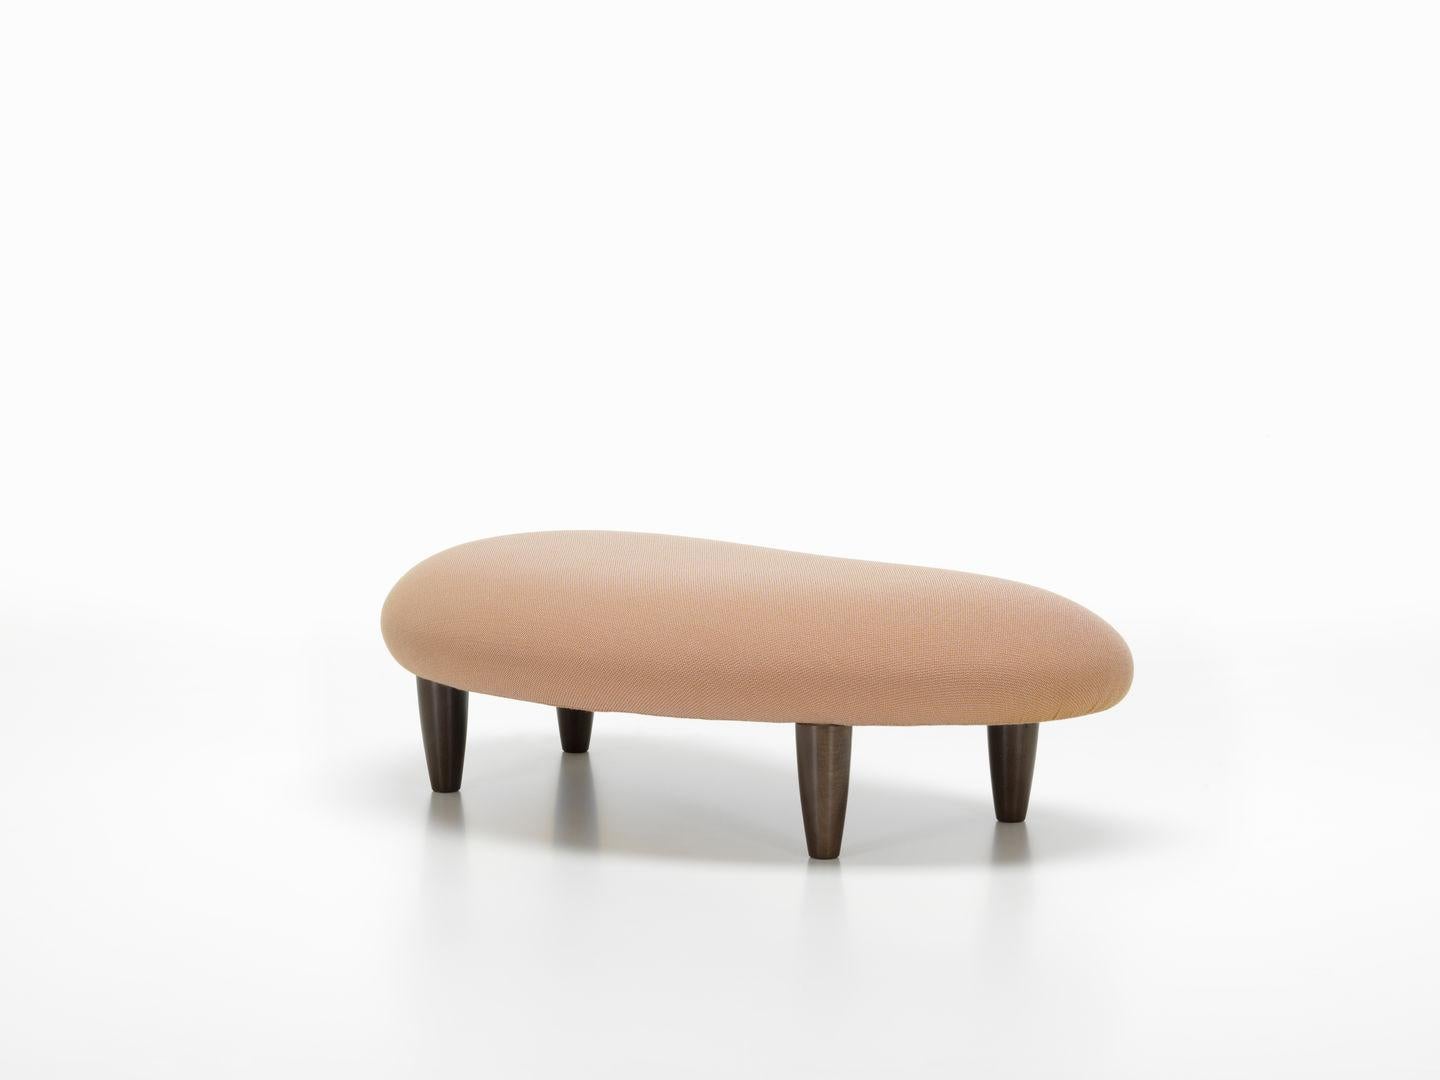 Swiss Isamu Noguchi Freeform Sofa and Ottoman by Vitra